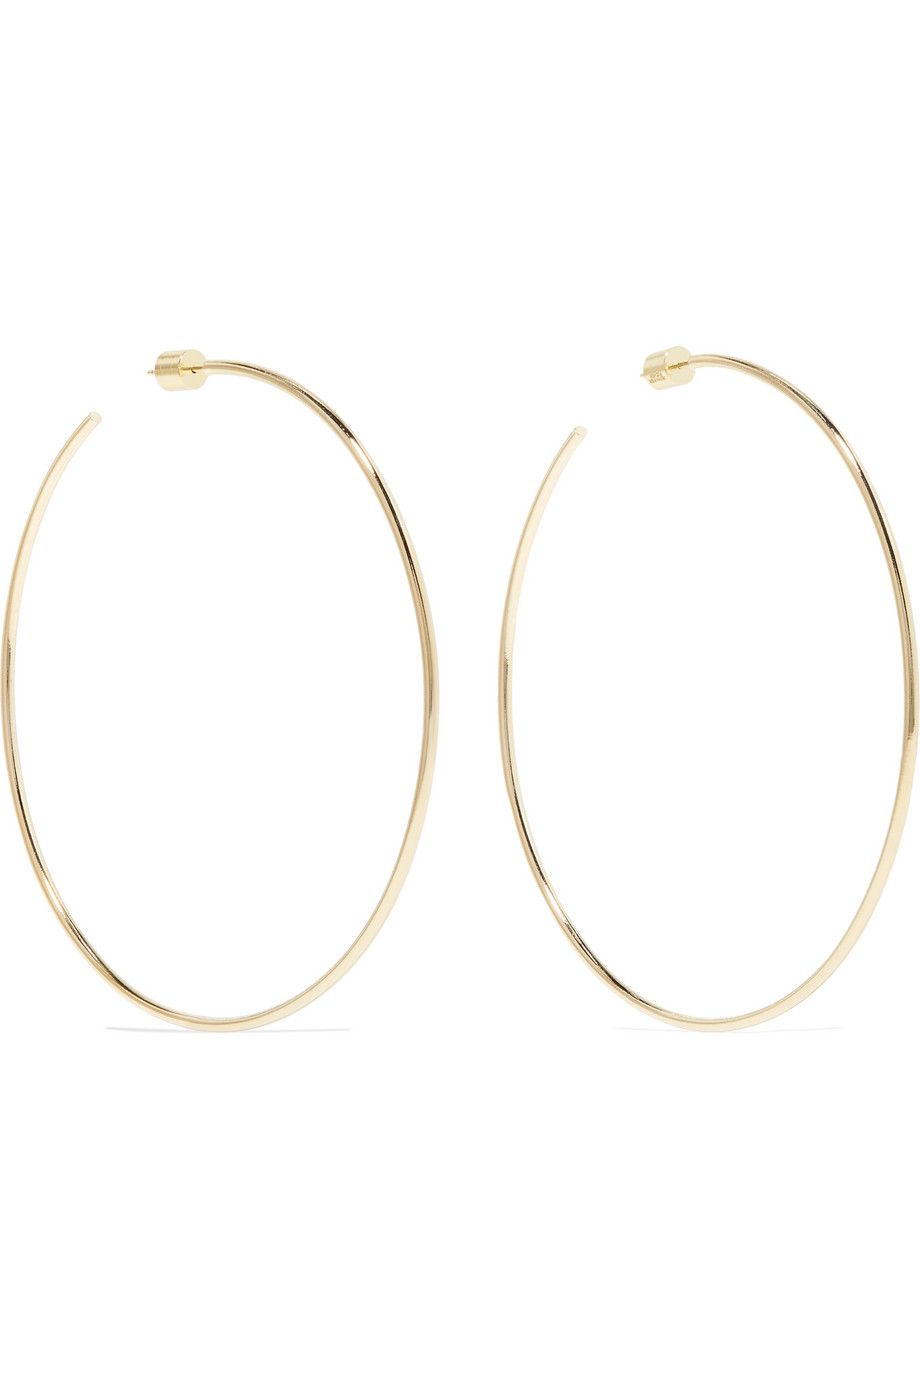 Skinny gold-plated hoop earrings